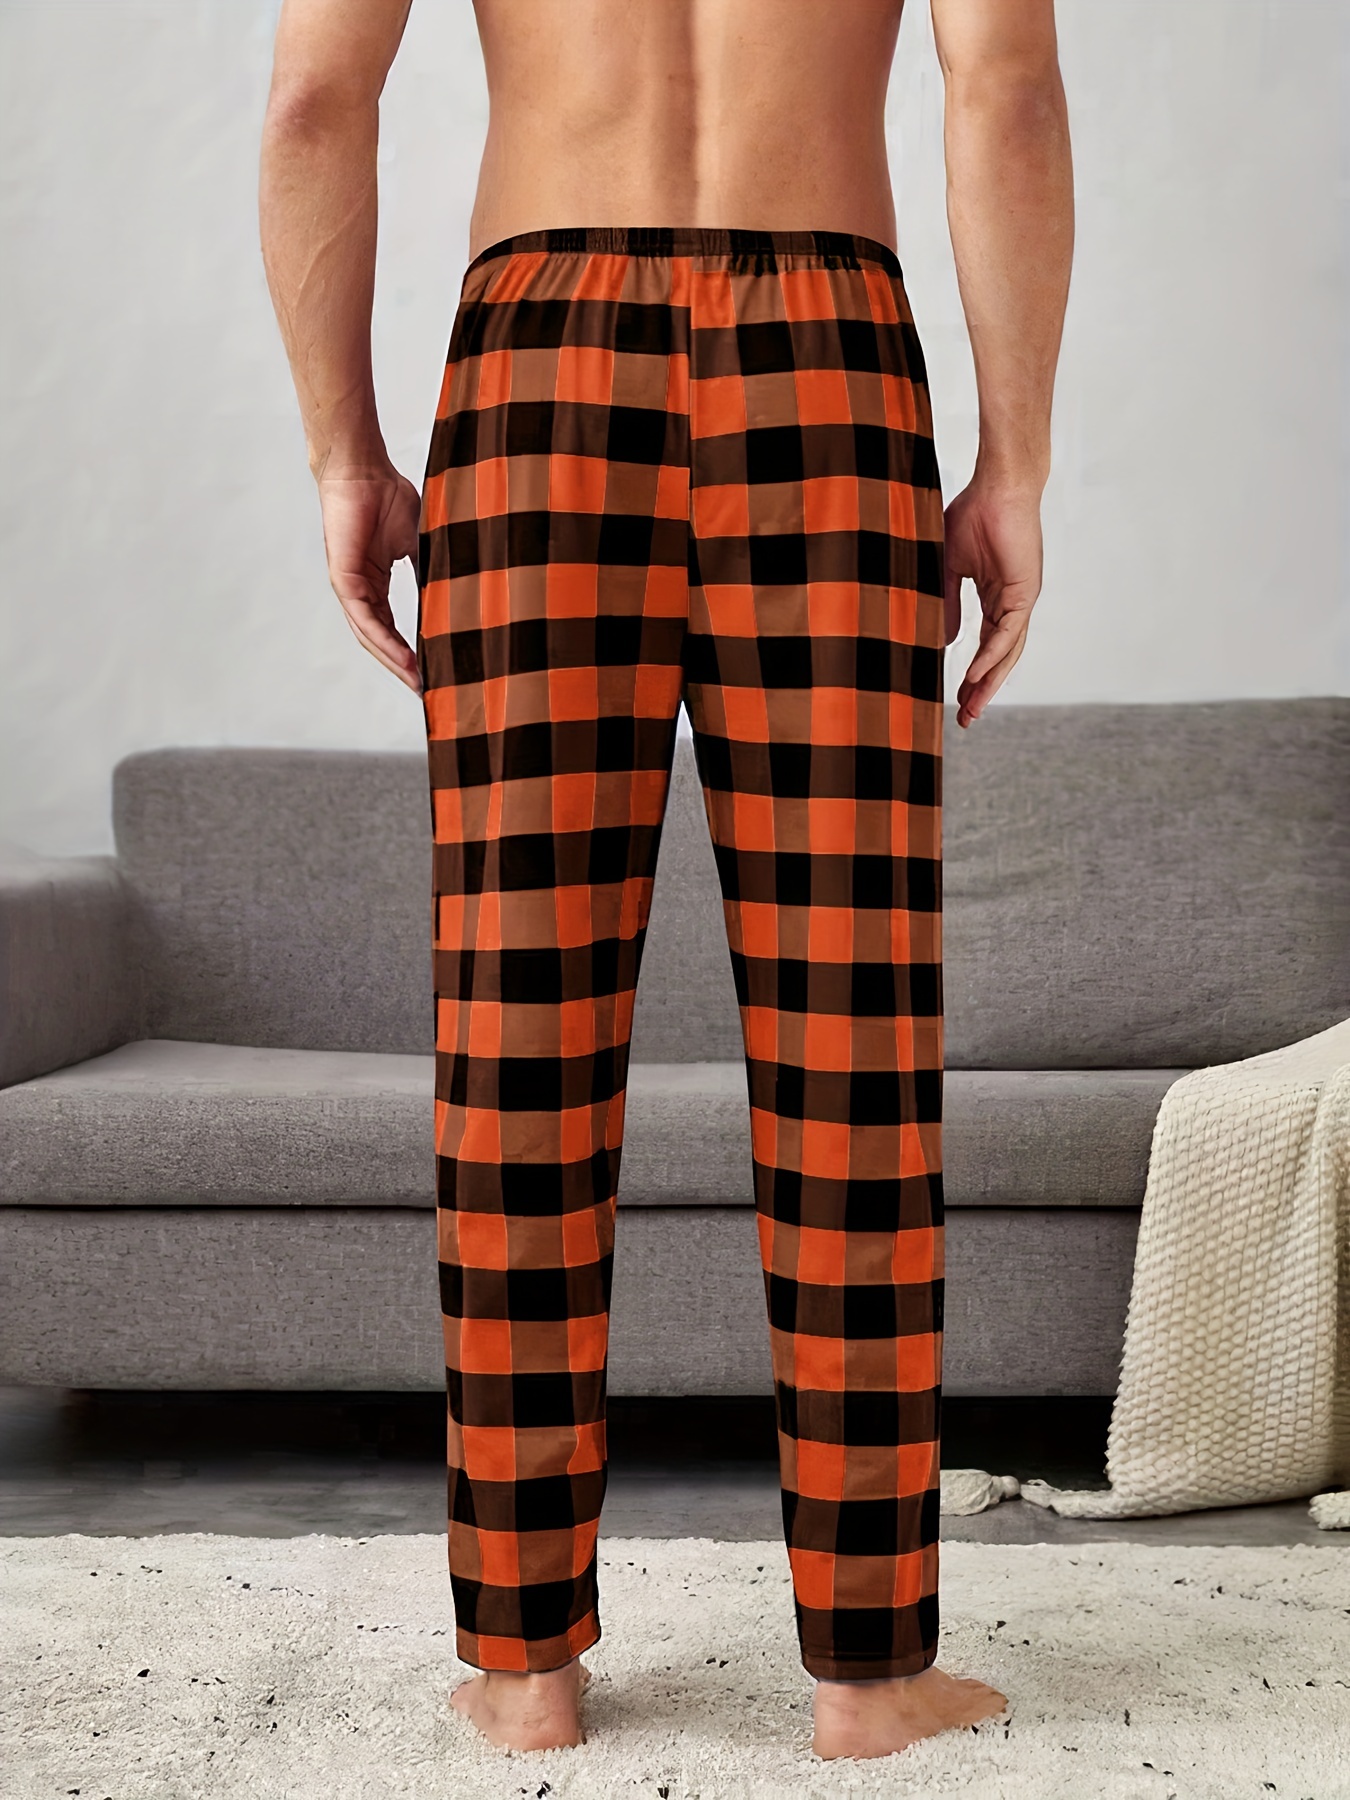 Wondershop At Target Mens Red Cotton Plaid Drawstring Pajama Pants Size XL  Tall | eBay